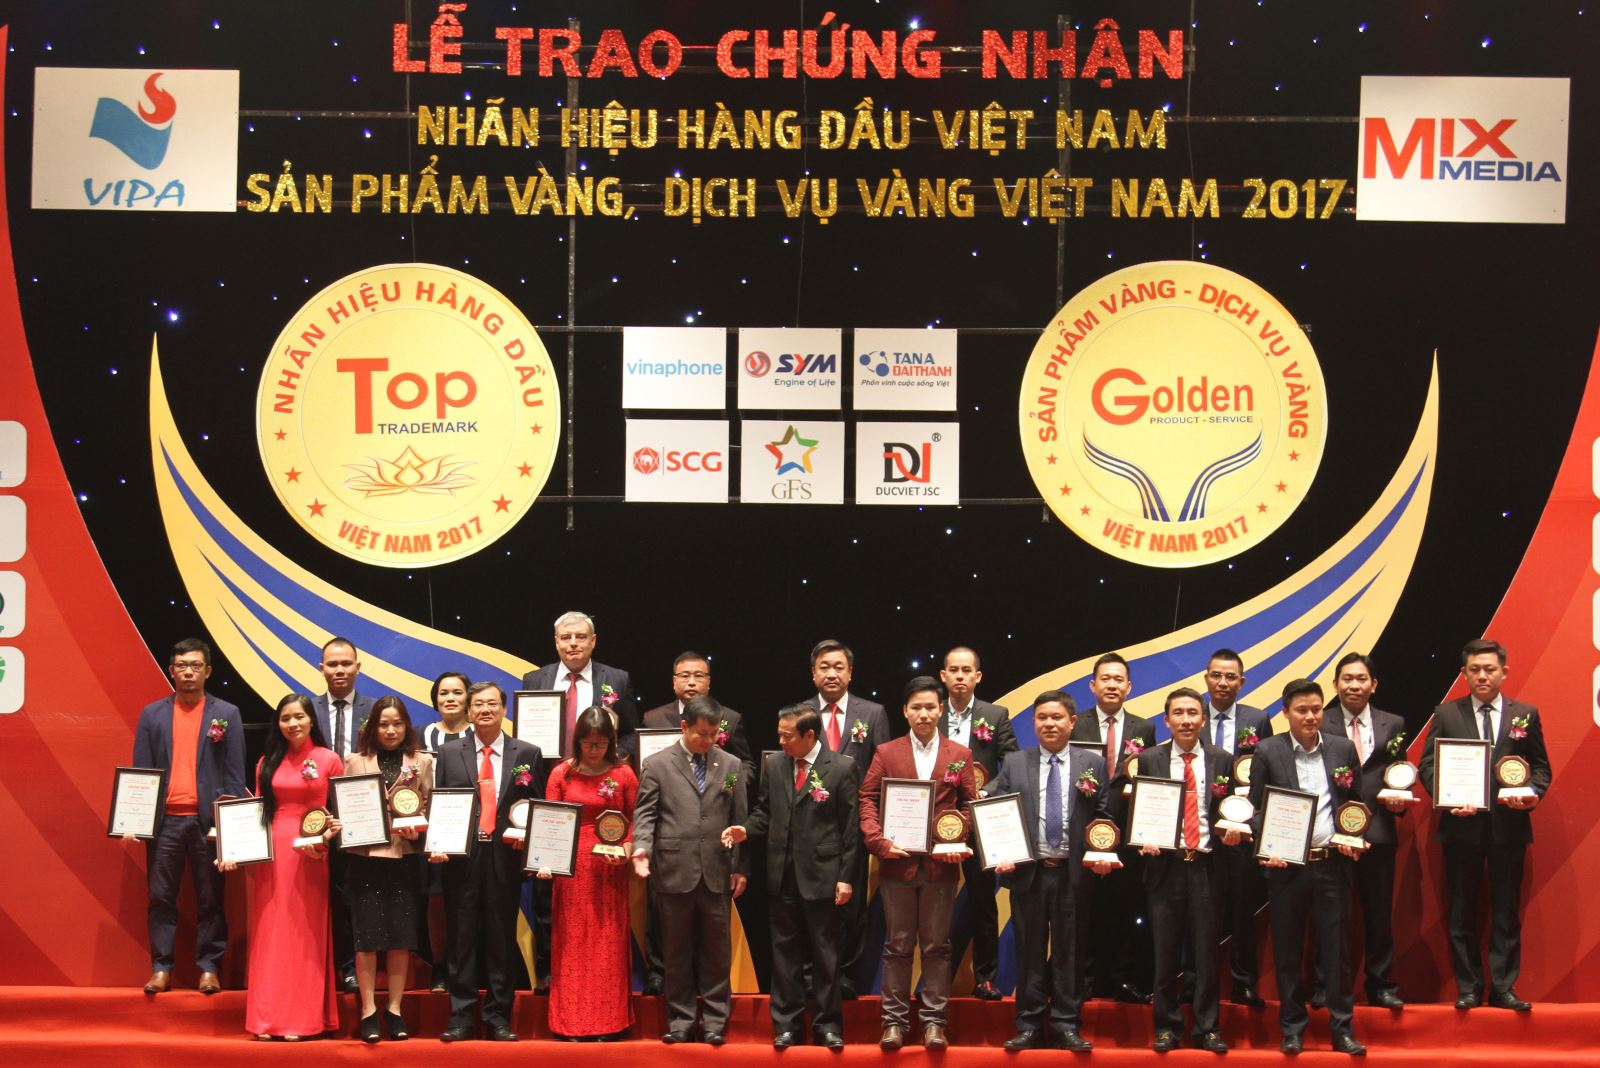 Nhà xuất bản Giáo dục Việt nam đạt chứng nhận Nhãn hiệu hàng đầu Việt Nam 2017